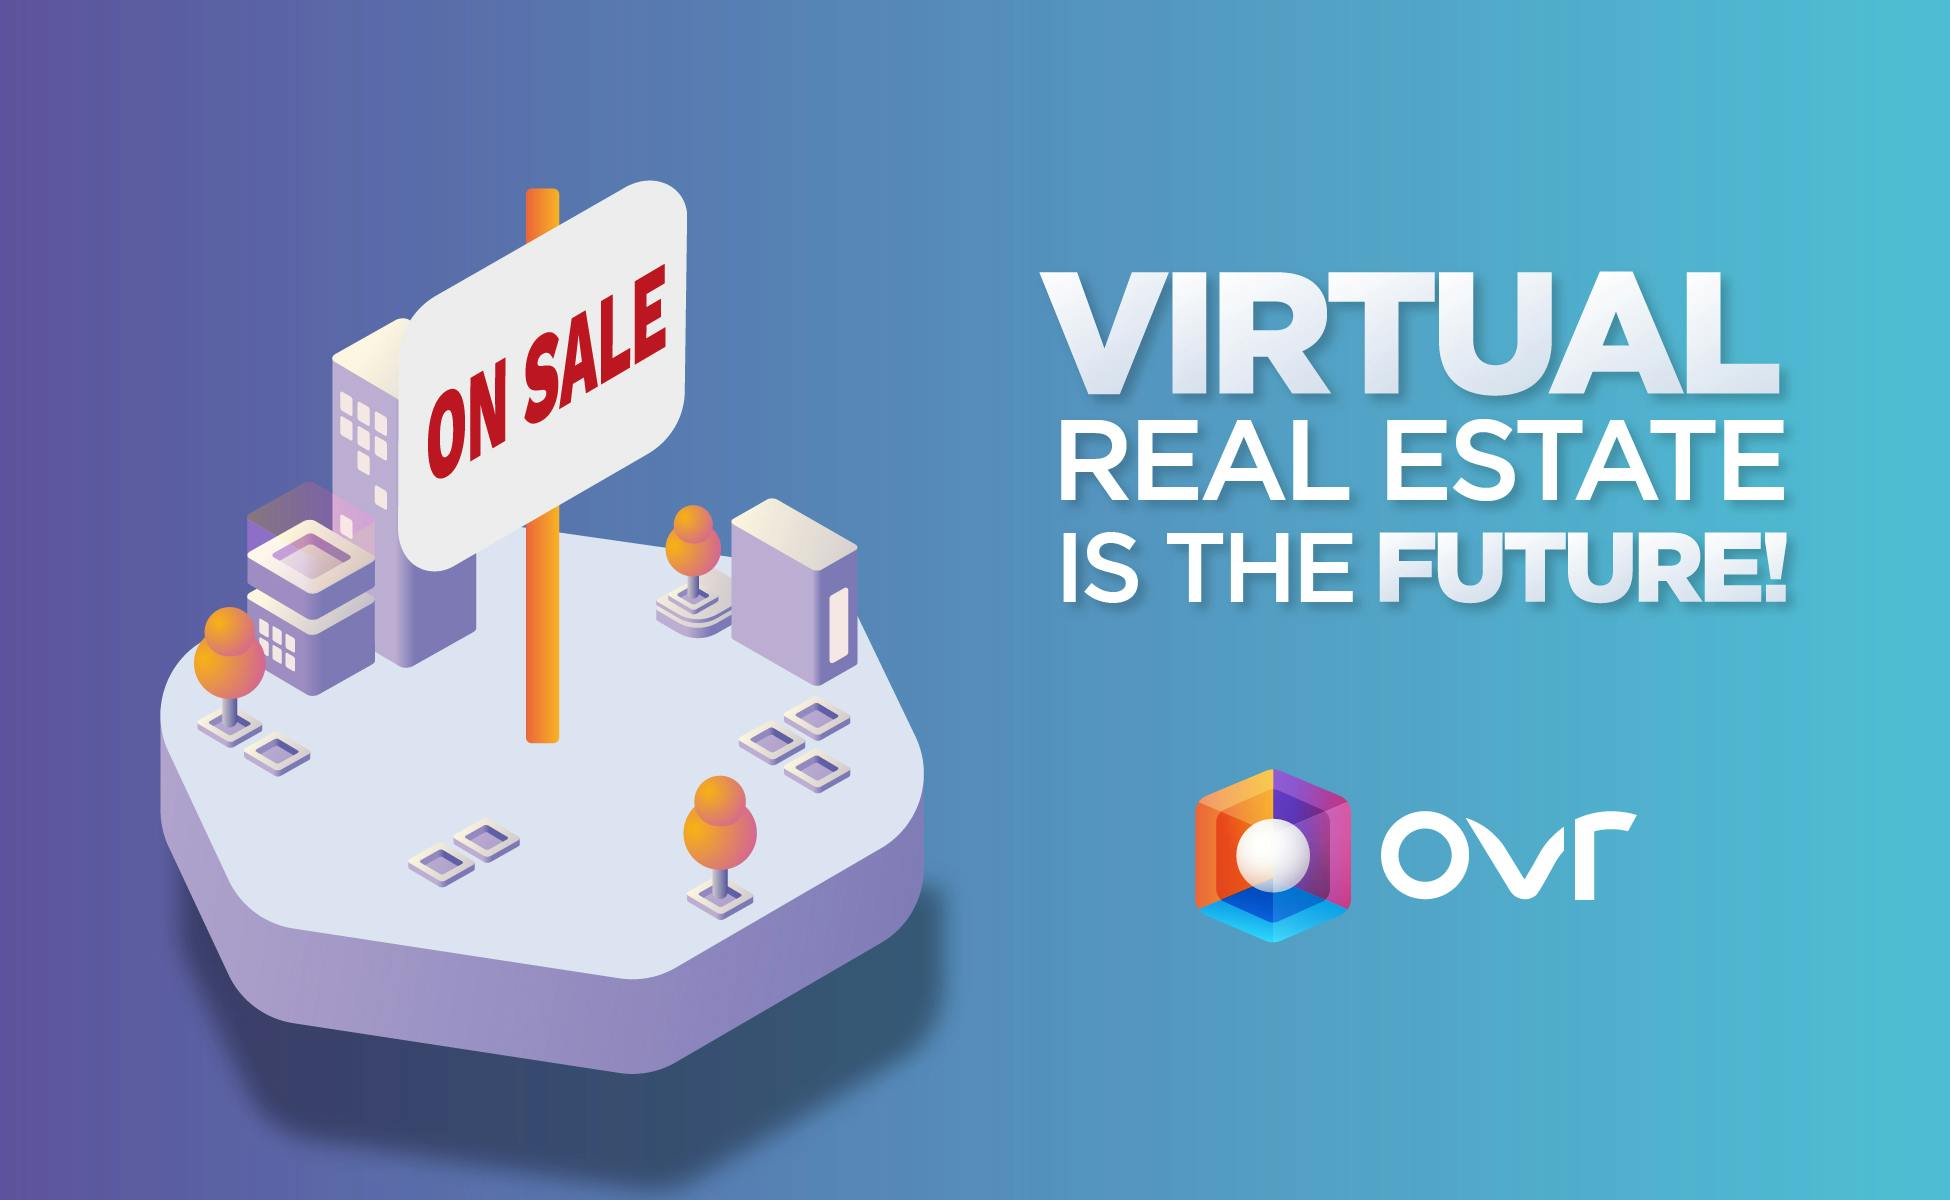 L’immobilier virtuel c’est l’avenir!